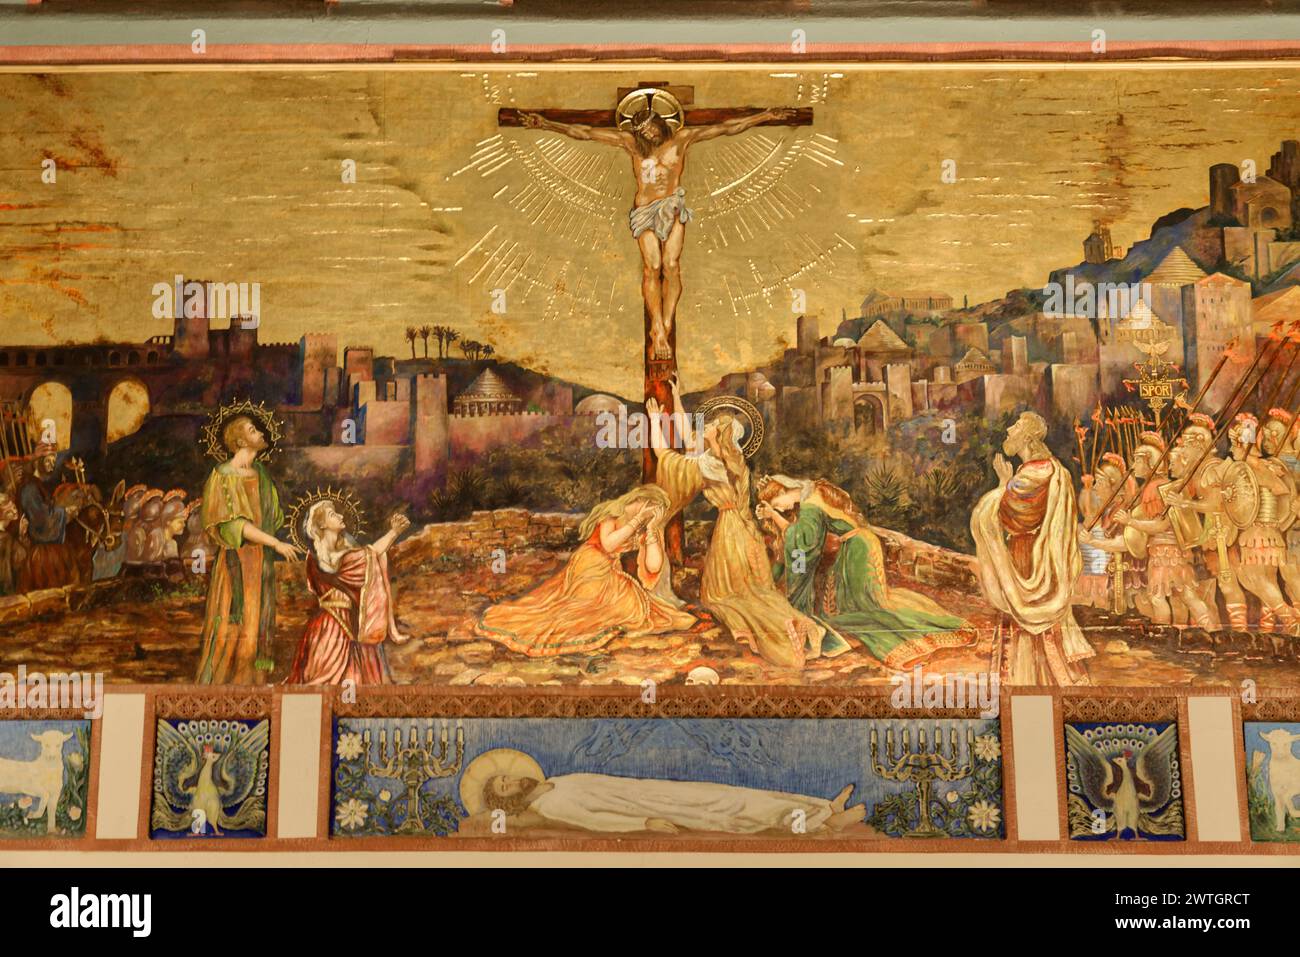 Église St Paul l'apôtre NYC, grande murale d'une scène de crucifixion avec des motifs historiques et religieux, Manhattan, New York City, New York, États-Unis Banque D'Images